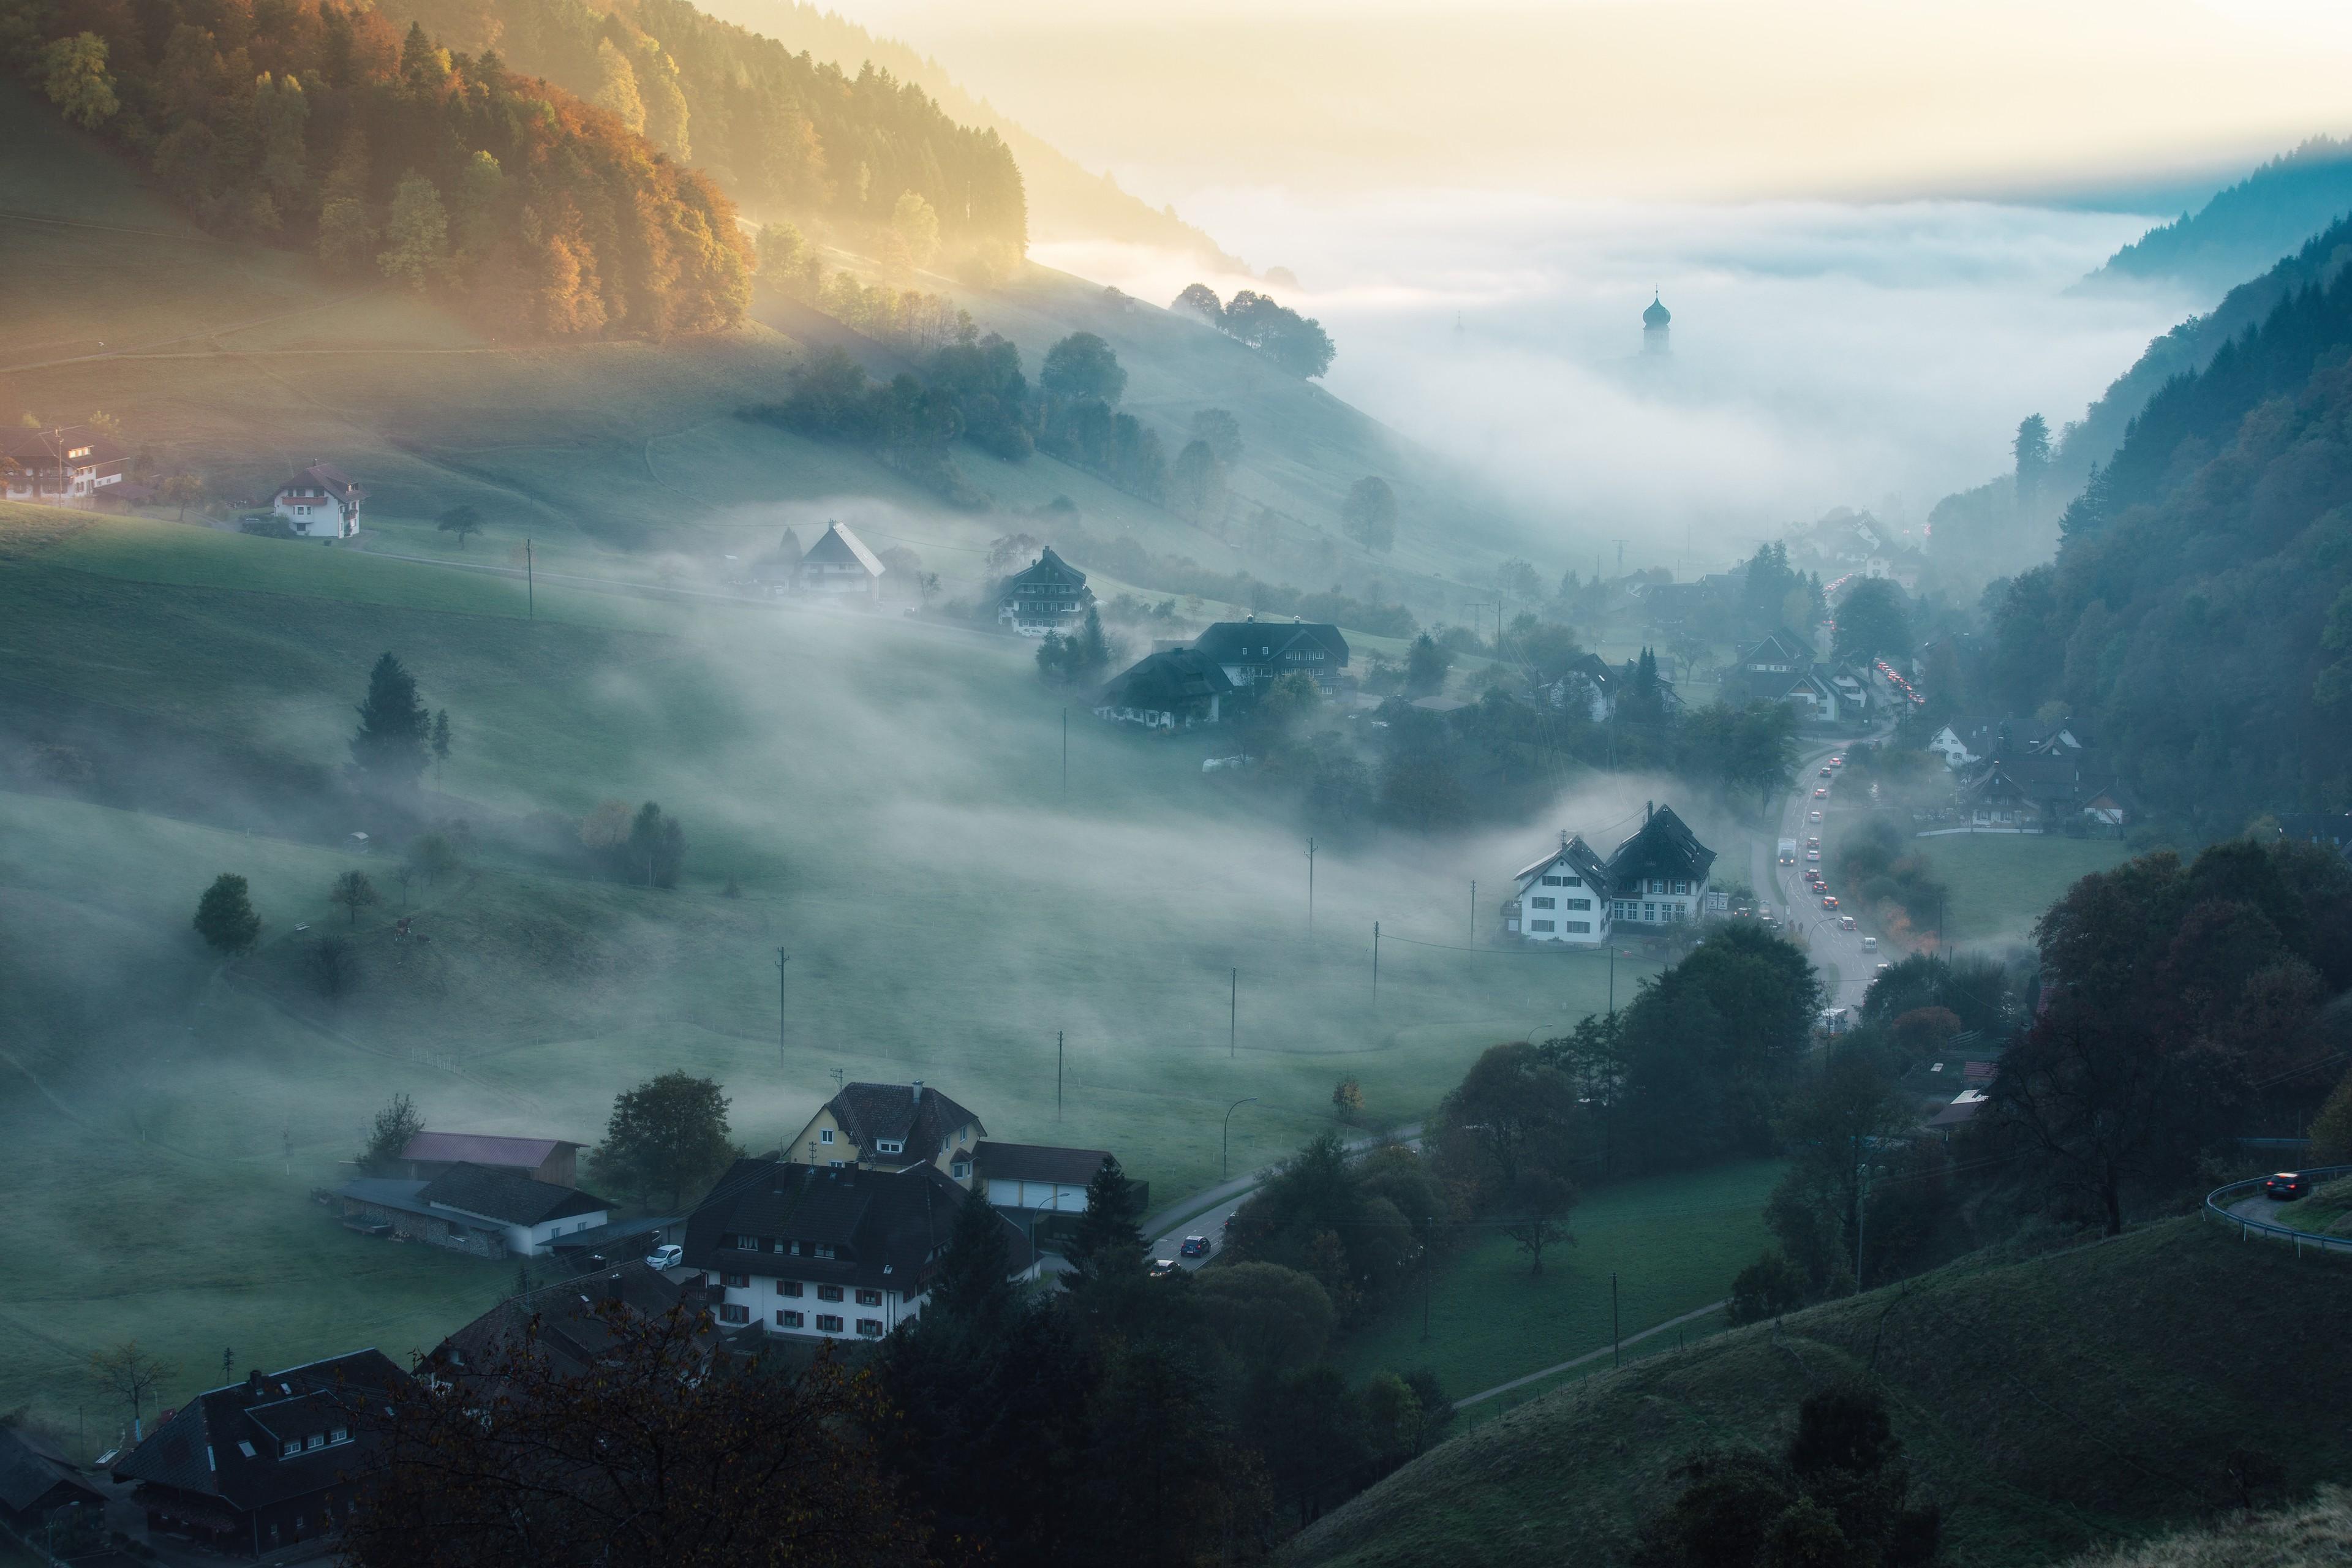 Dorf im Schwarzwald im Morgennebel.